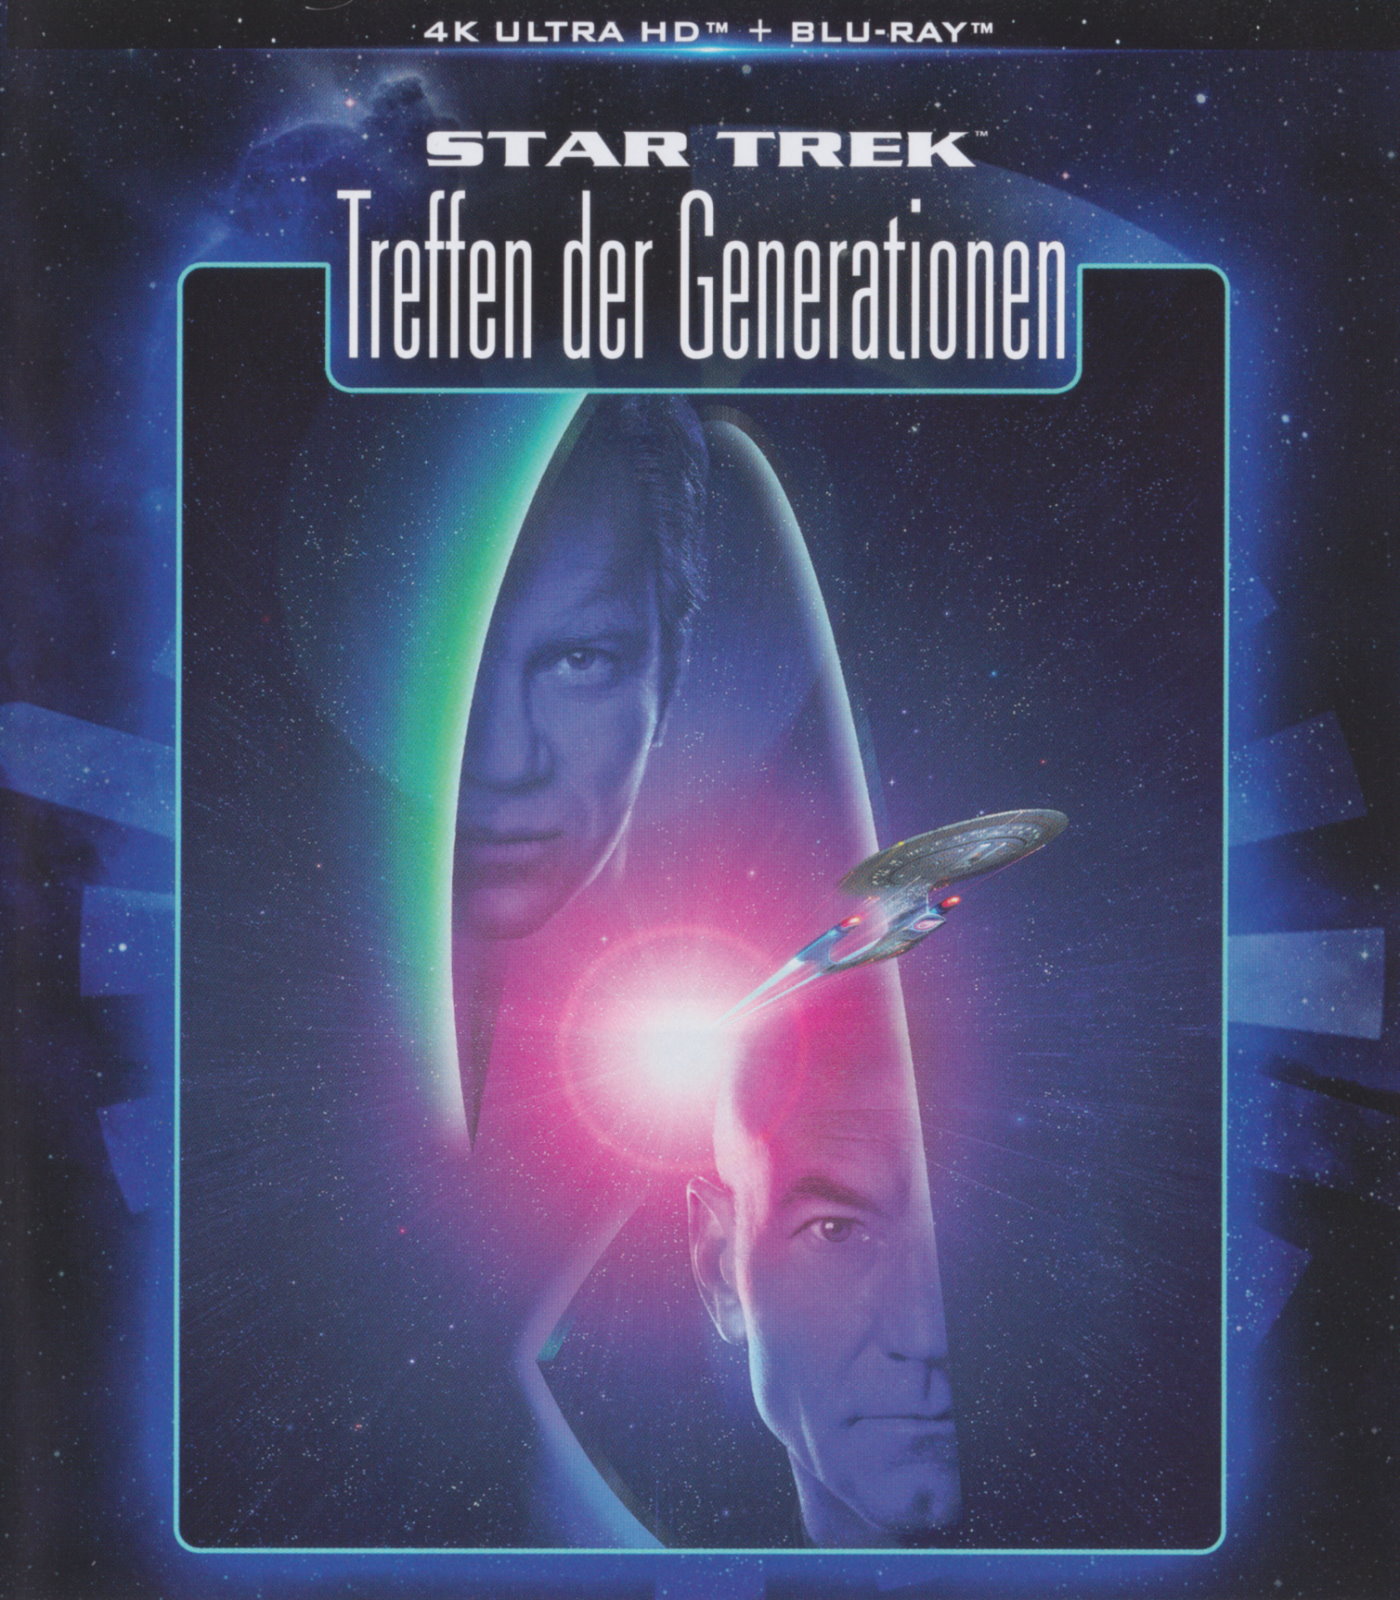 Cover - Star Trek - Treffen der Generationen.jpg